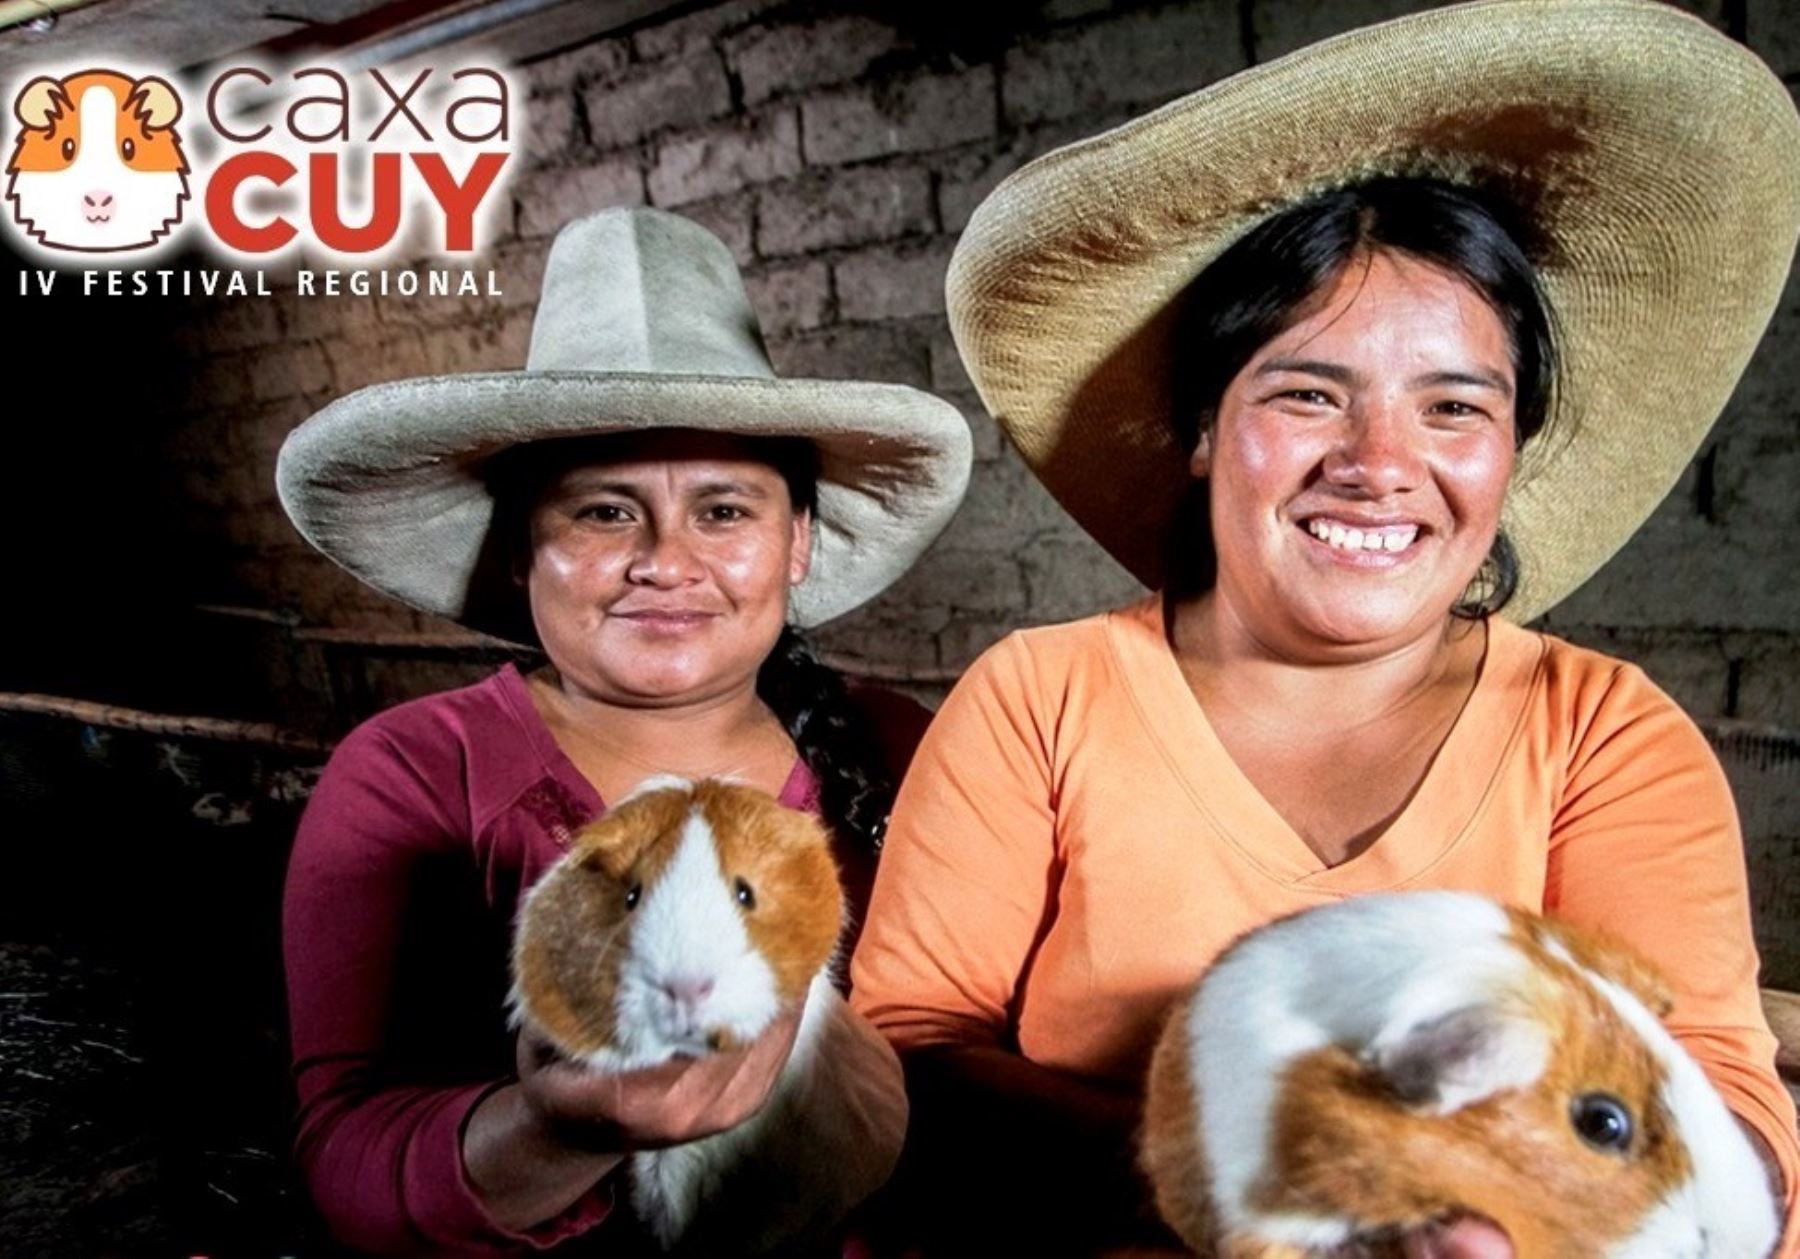 El IV Festival Caxacuy tiene como objetivo promover el consumo y comercialización del cuy en Cajamarca e impulsar su producción en esta región. Foto: Eduard Lozano